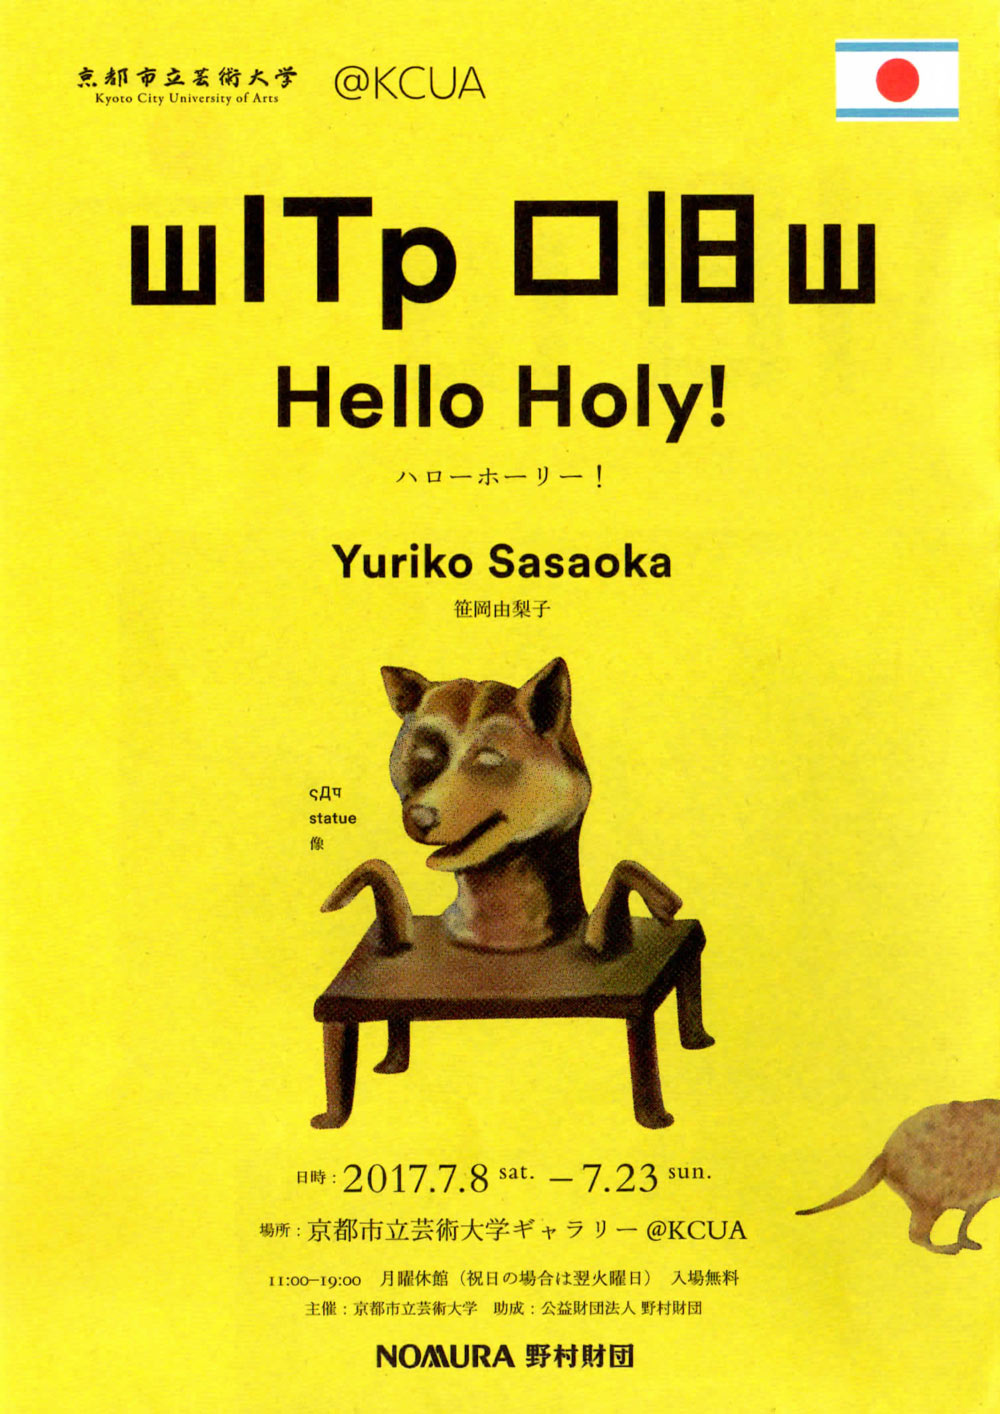 笹岡由梨子「Hello Holy!」のチラシ表紙画像